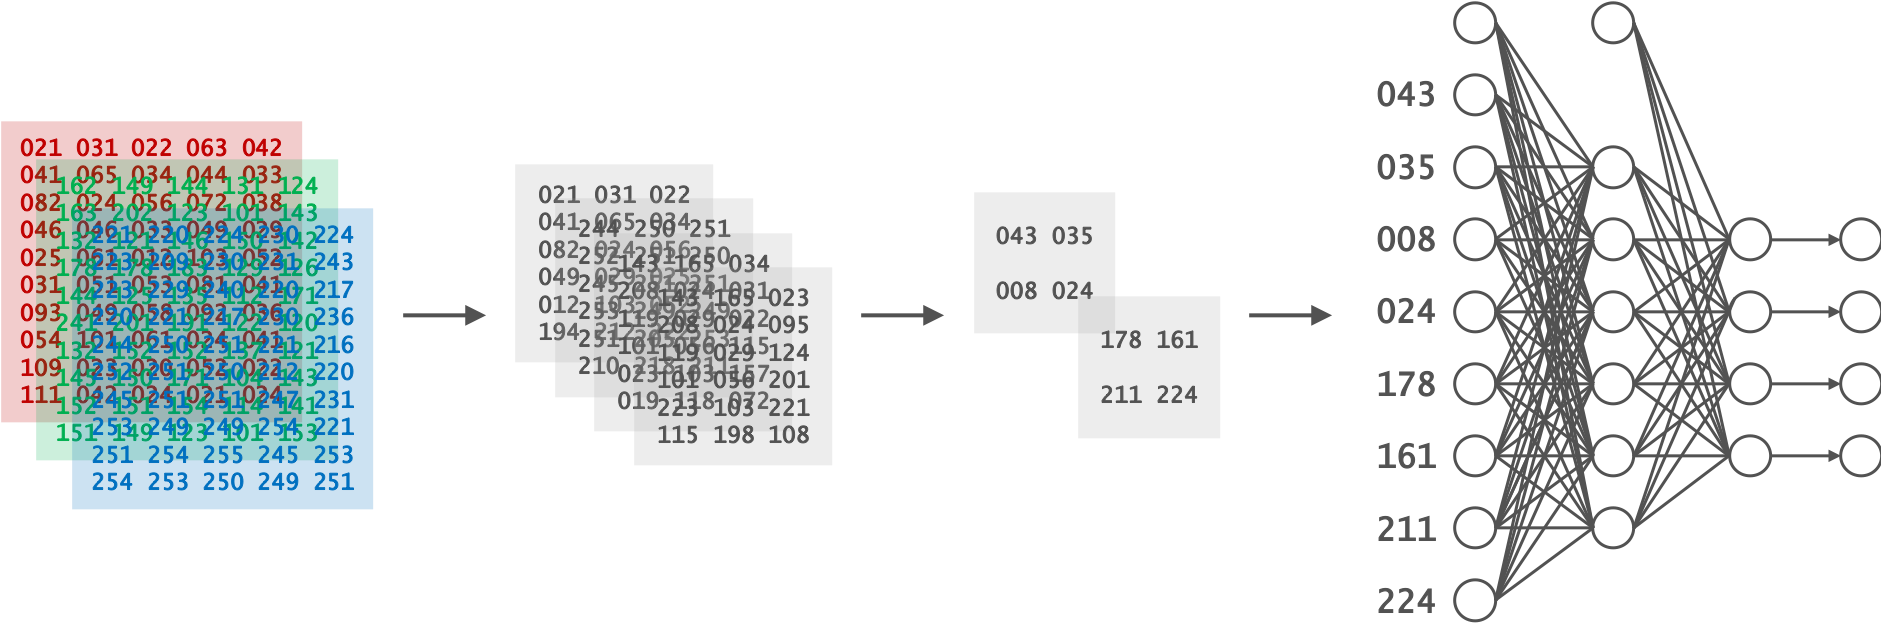 畳み込みニューラルネットワークは、特徴を抽出するための畳み込み層と分類を行うためのニューラルネットワークで構成されている。